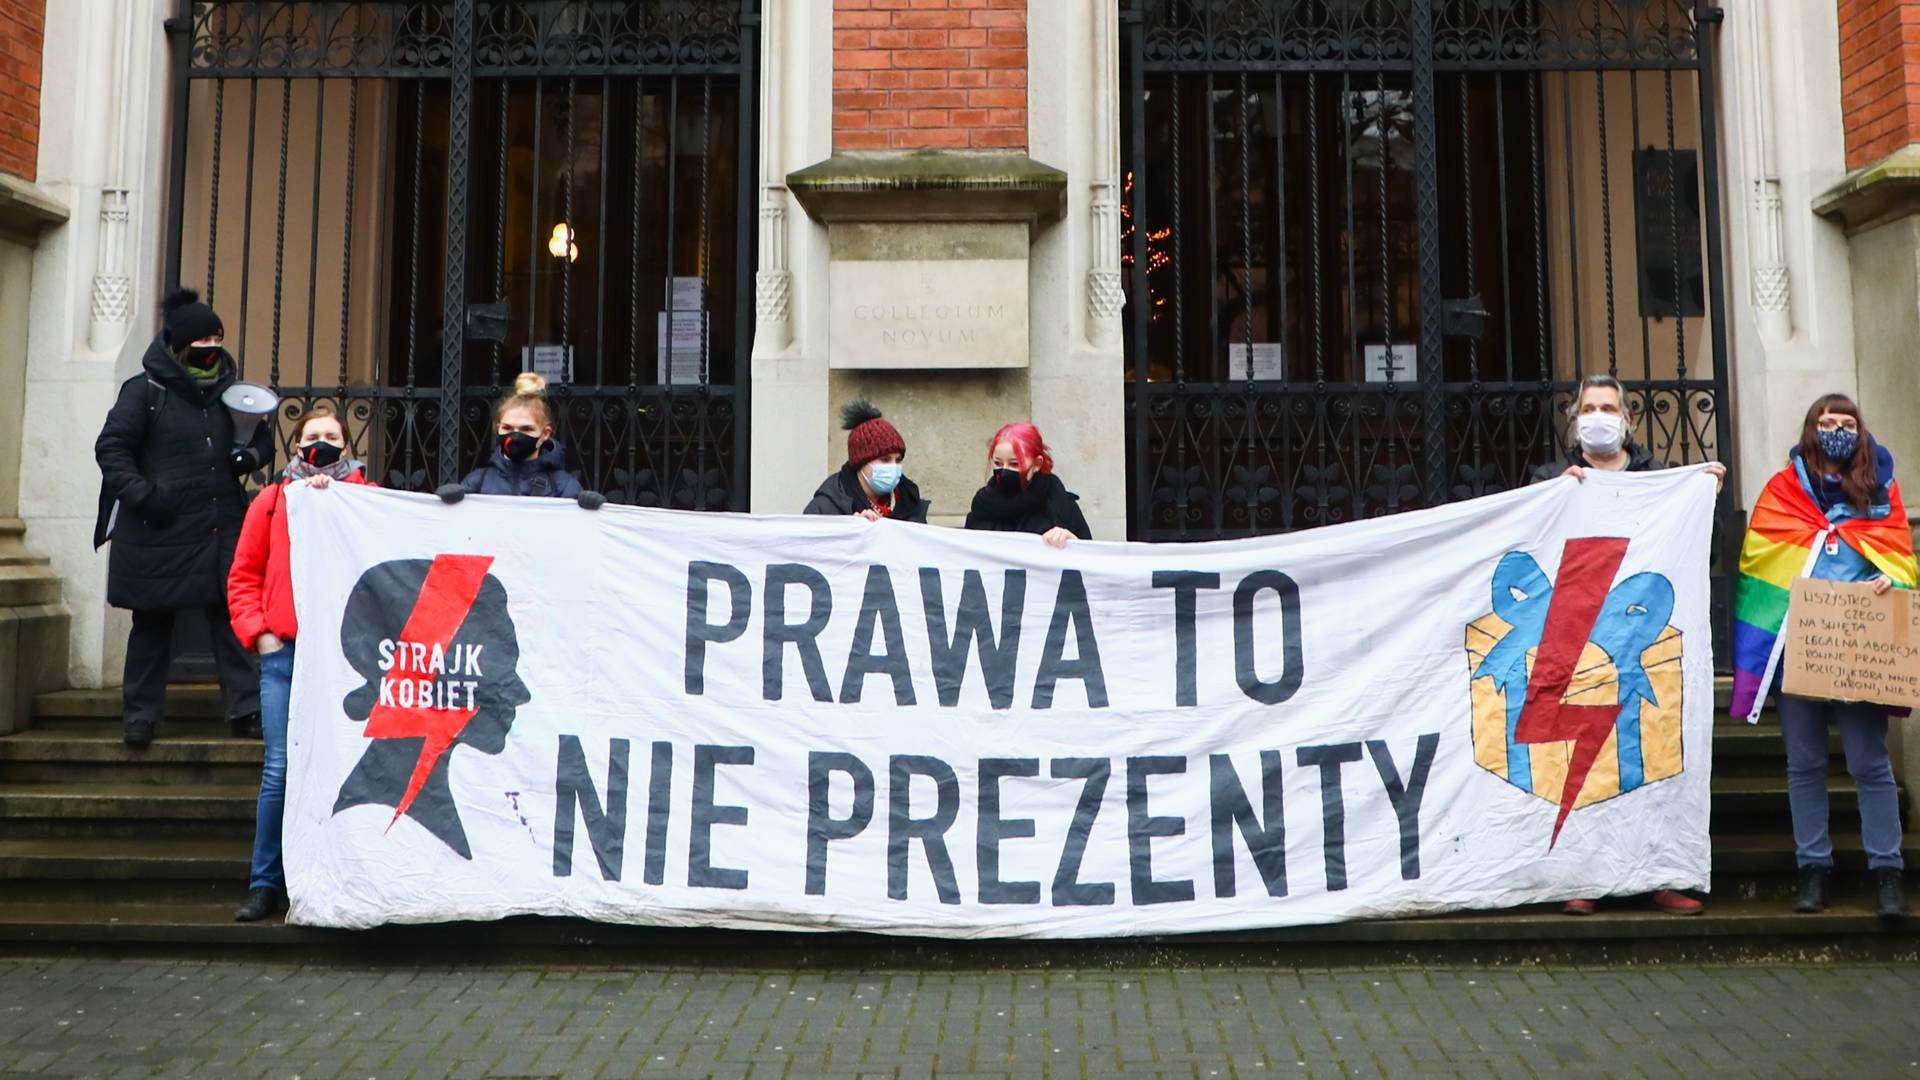 Ogólnopolski Strajk Kobiet zaproponował kolędy "pro-choice". Internauci podzieleni